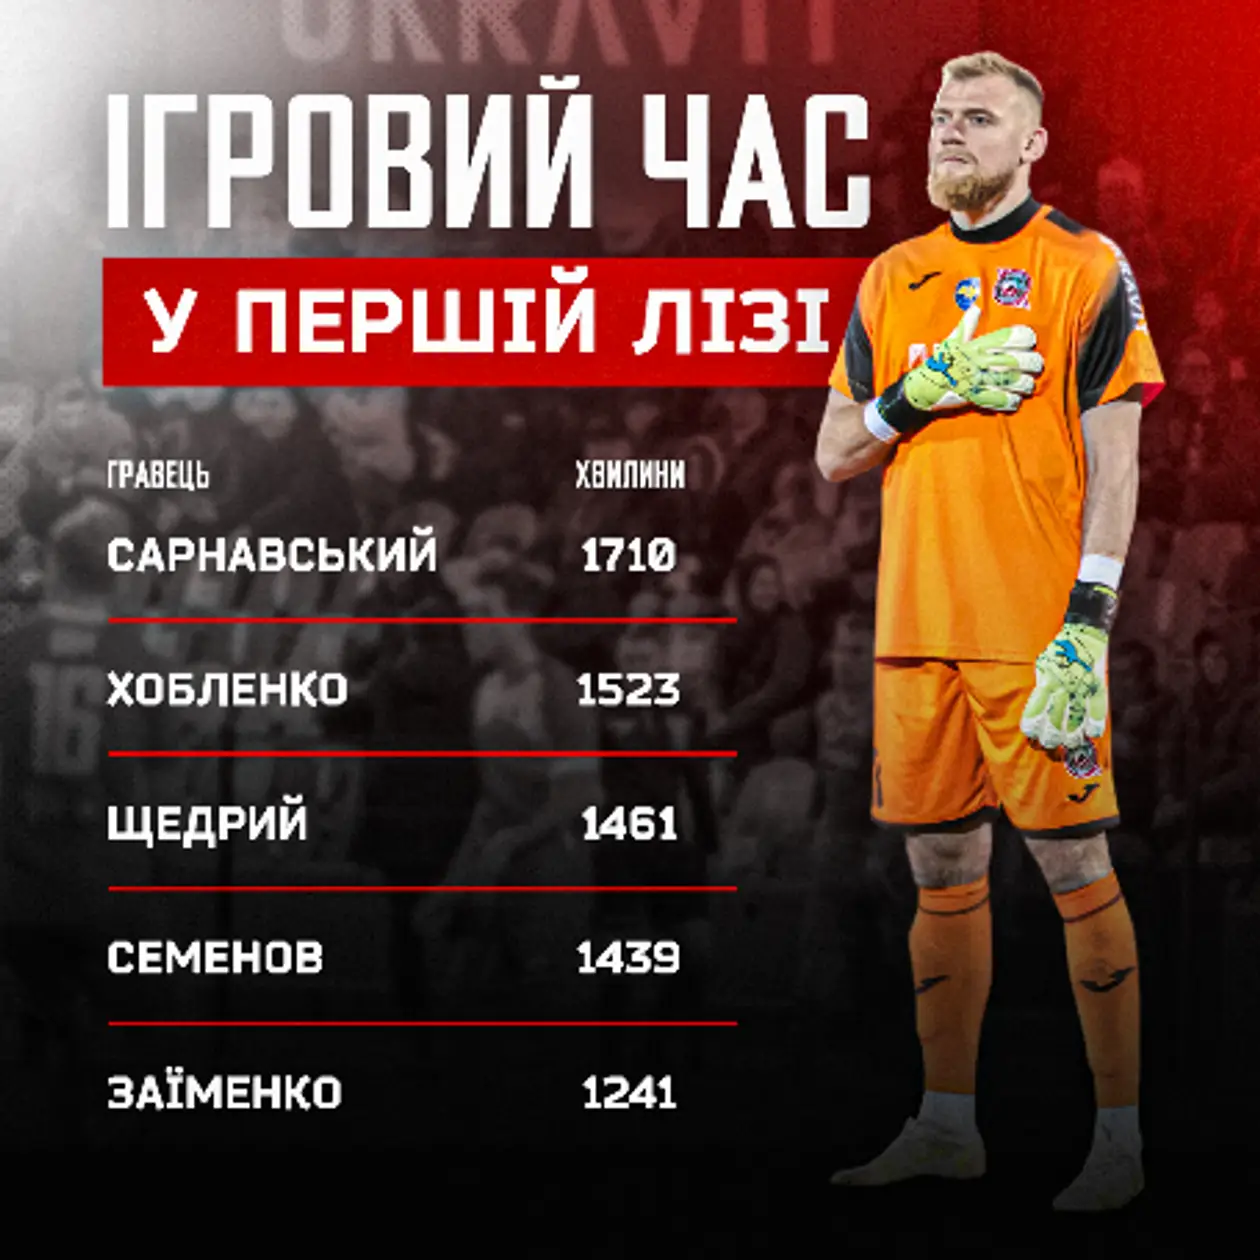 Богдан Сарнавський – лідер за кількістю зіграного часу в Першій лізі